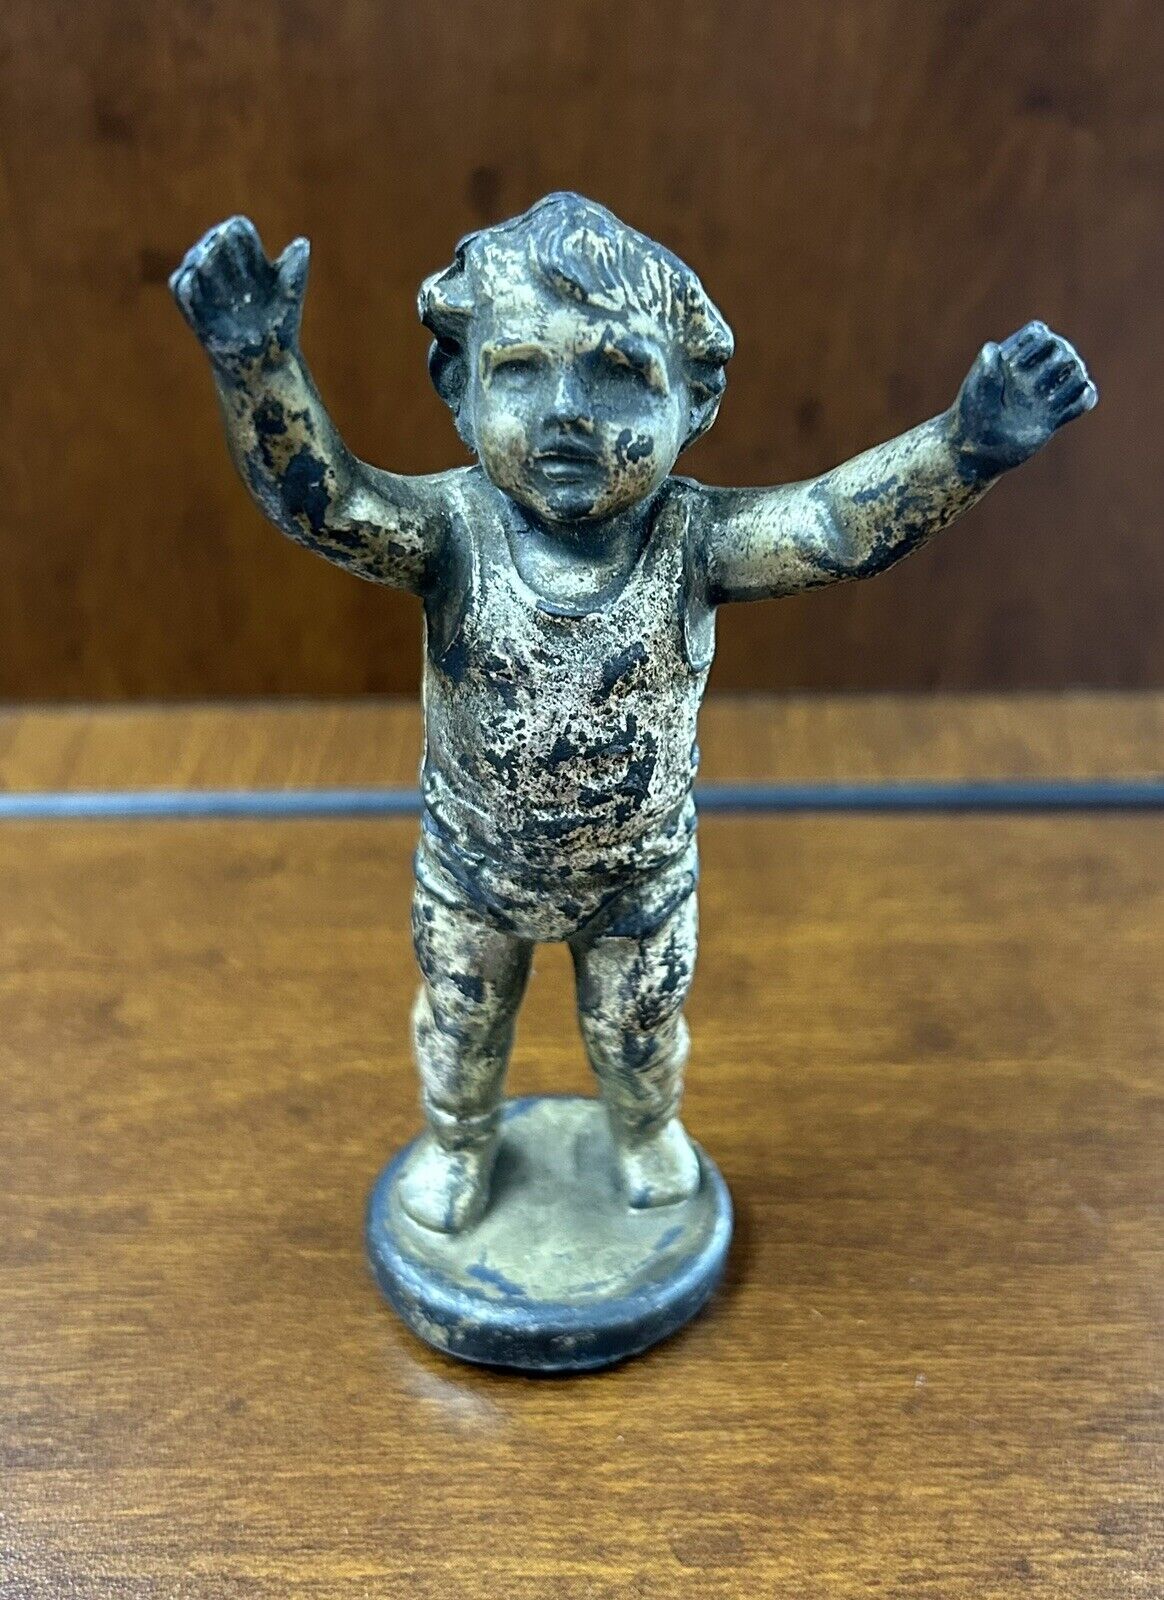 Vintage Or Antique Child Infant ‘Pick Me Up’ Metal Statue Figurine 4-3/8”